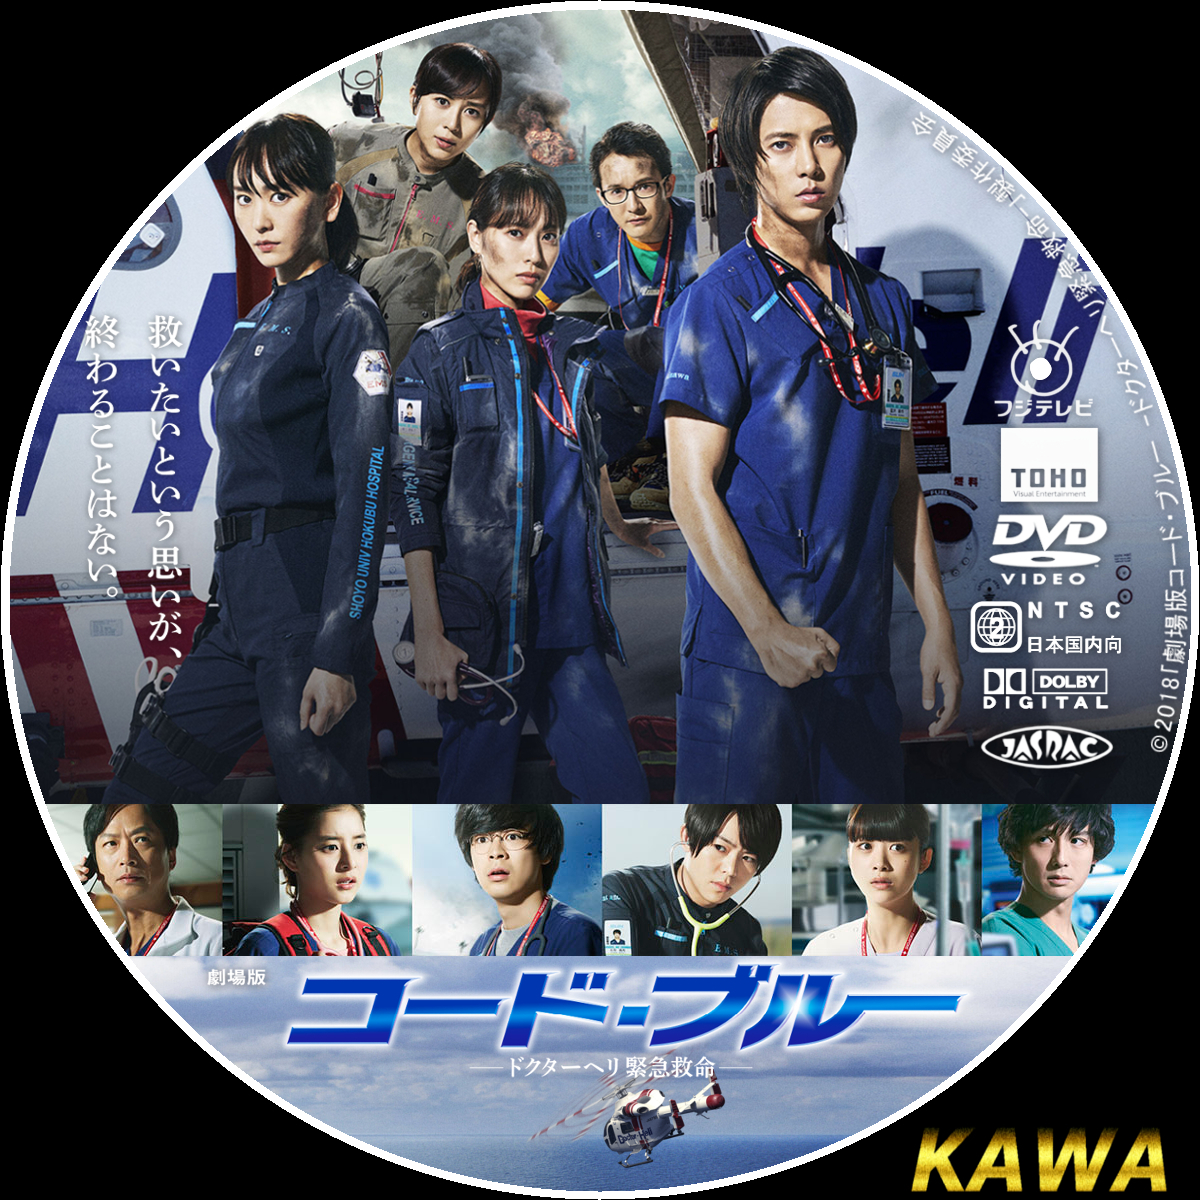 コード・ブルー DVDBOX 1st 2nd スペシャル - DVD/ブルーレイ